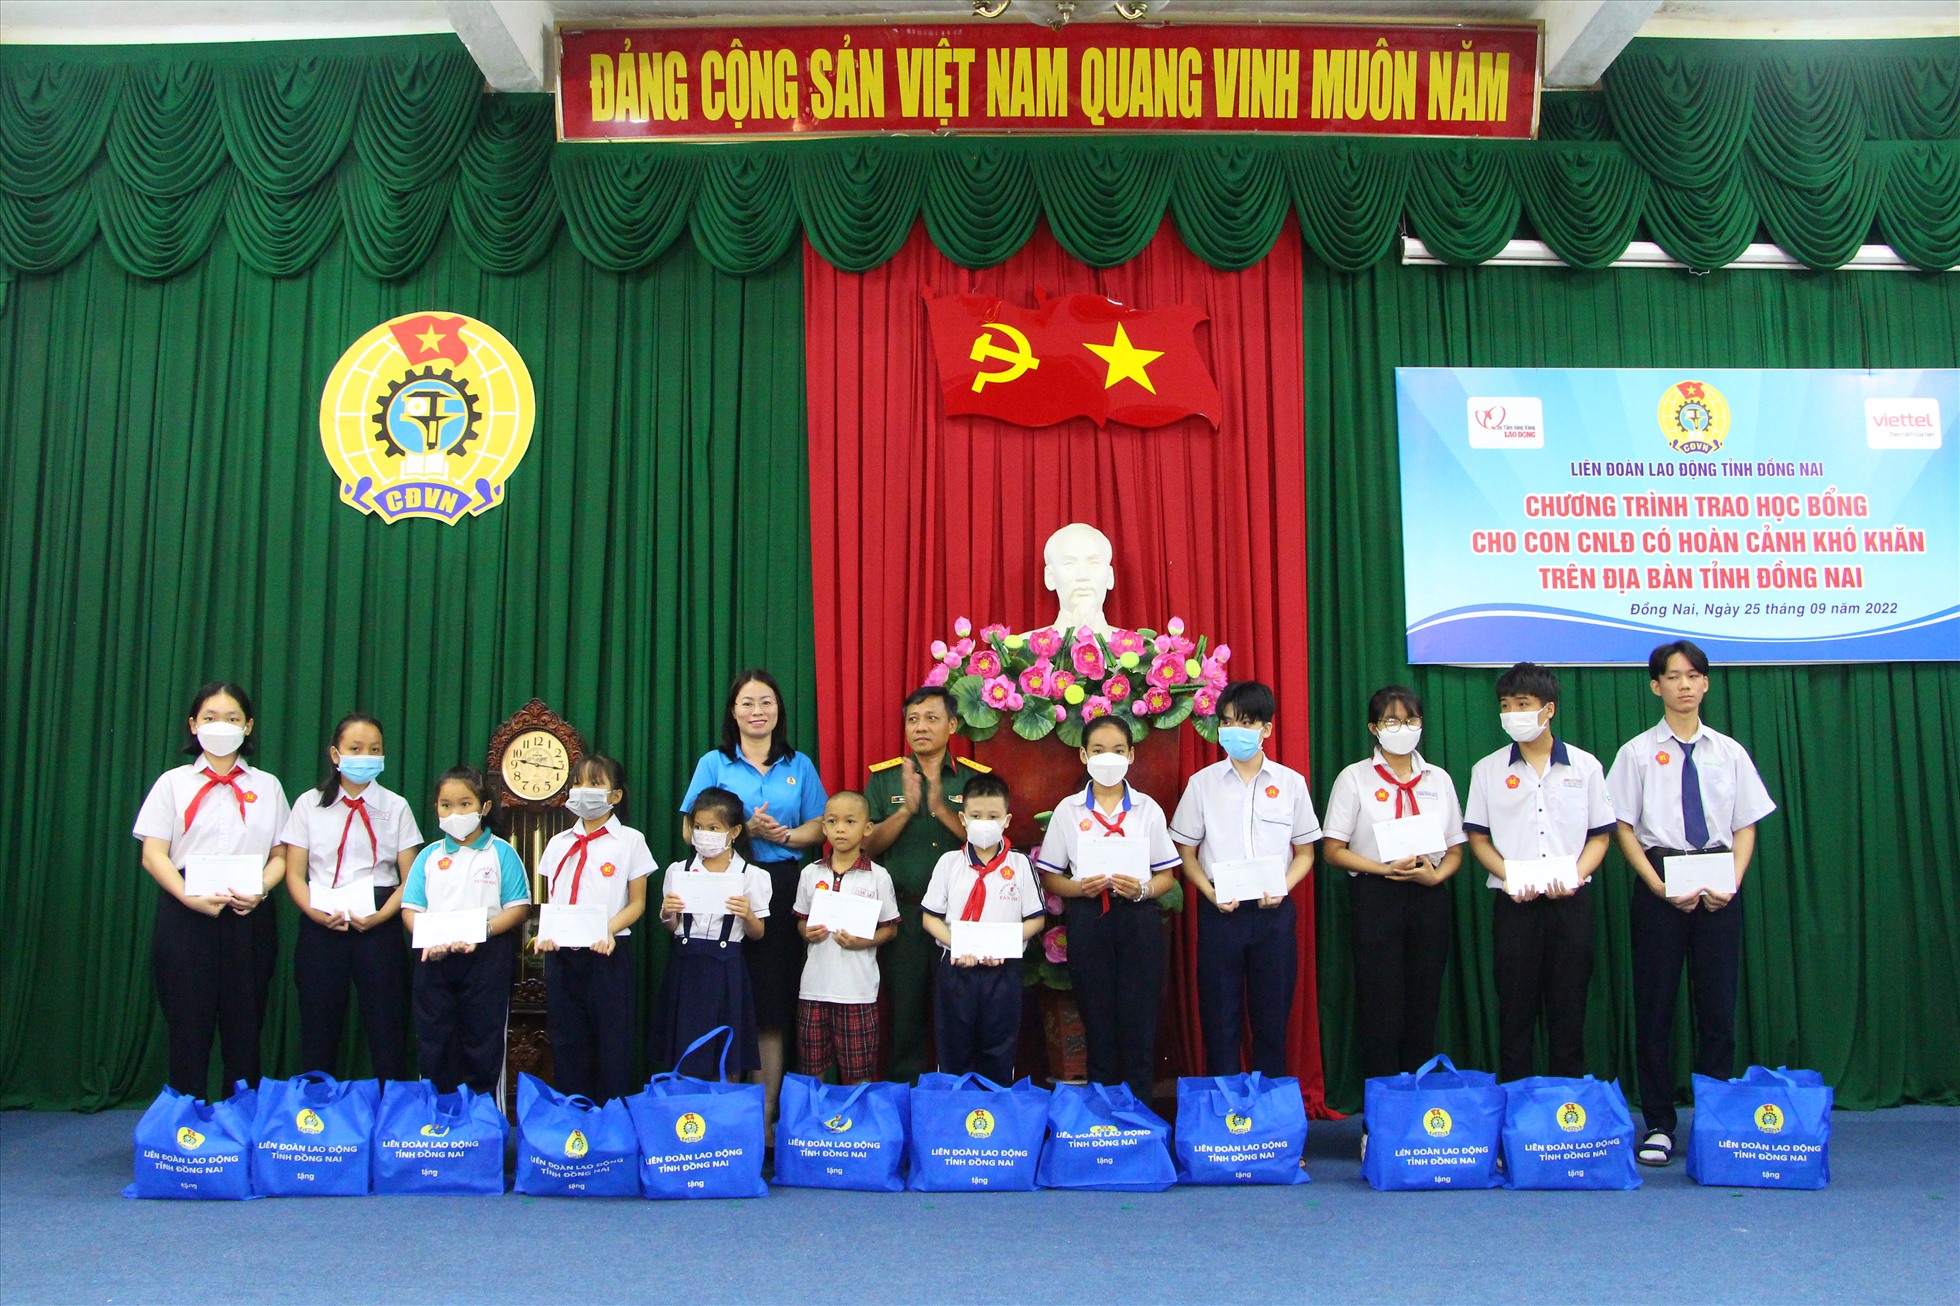 LĐLĐ tỉnh Đồng Nai đã tổ chức chương trình trao học bổng cho 100 con công nhân lao động. Ảnh: Hà Anh Chiến